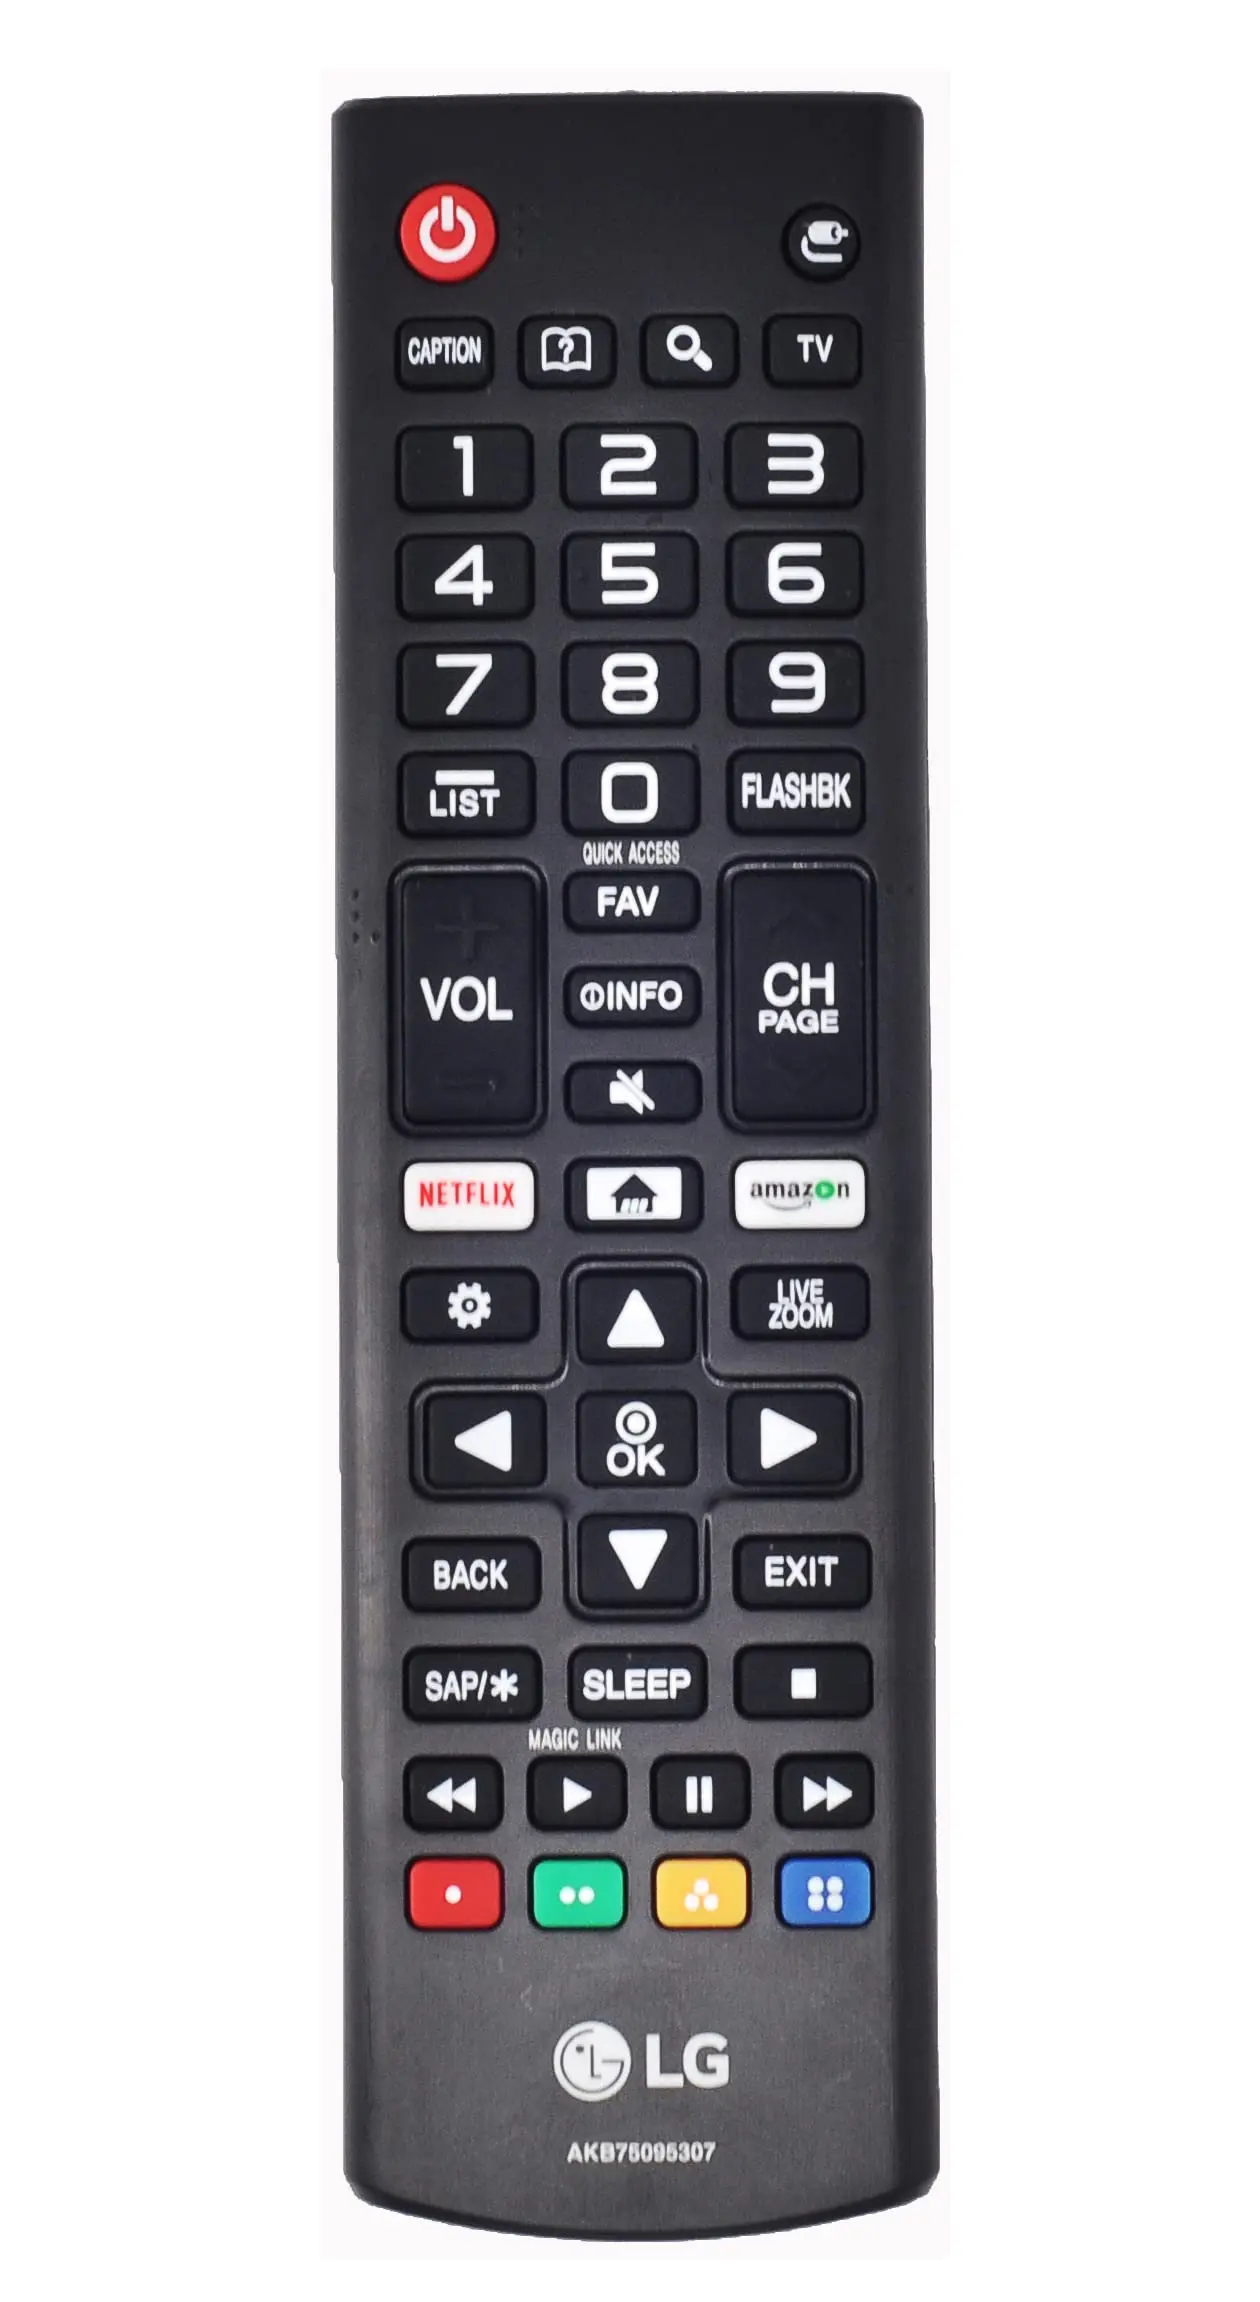 donde comprar control inteligente smart tv lg - Puedo comprar un nuevo control remoto para mi televisor LG